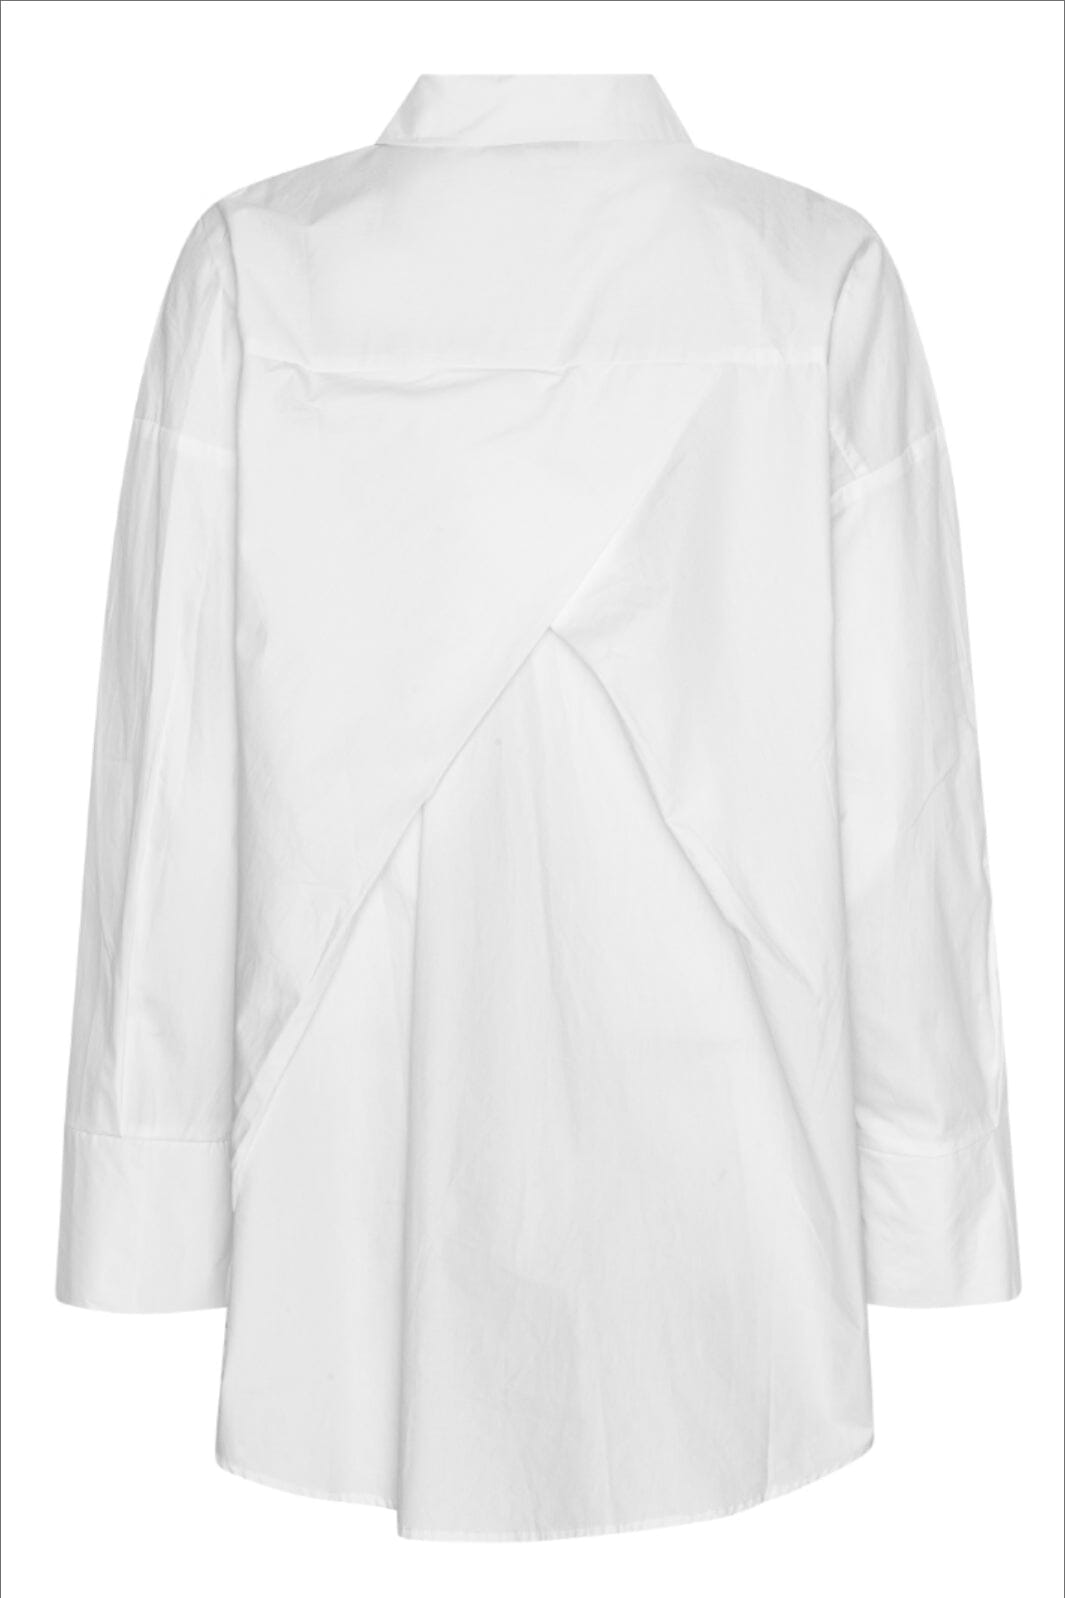 A-View - Magnolia Shirt - 000 White Skjorter 